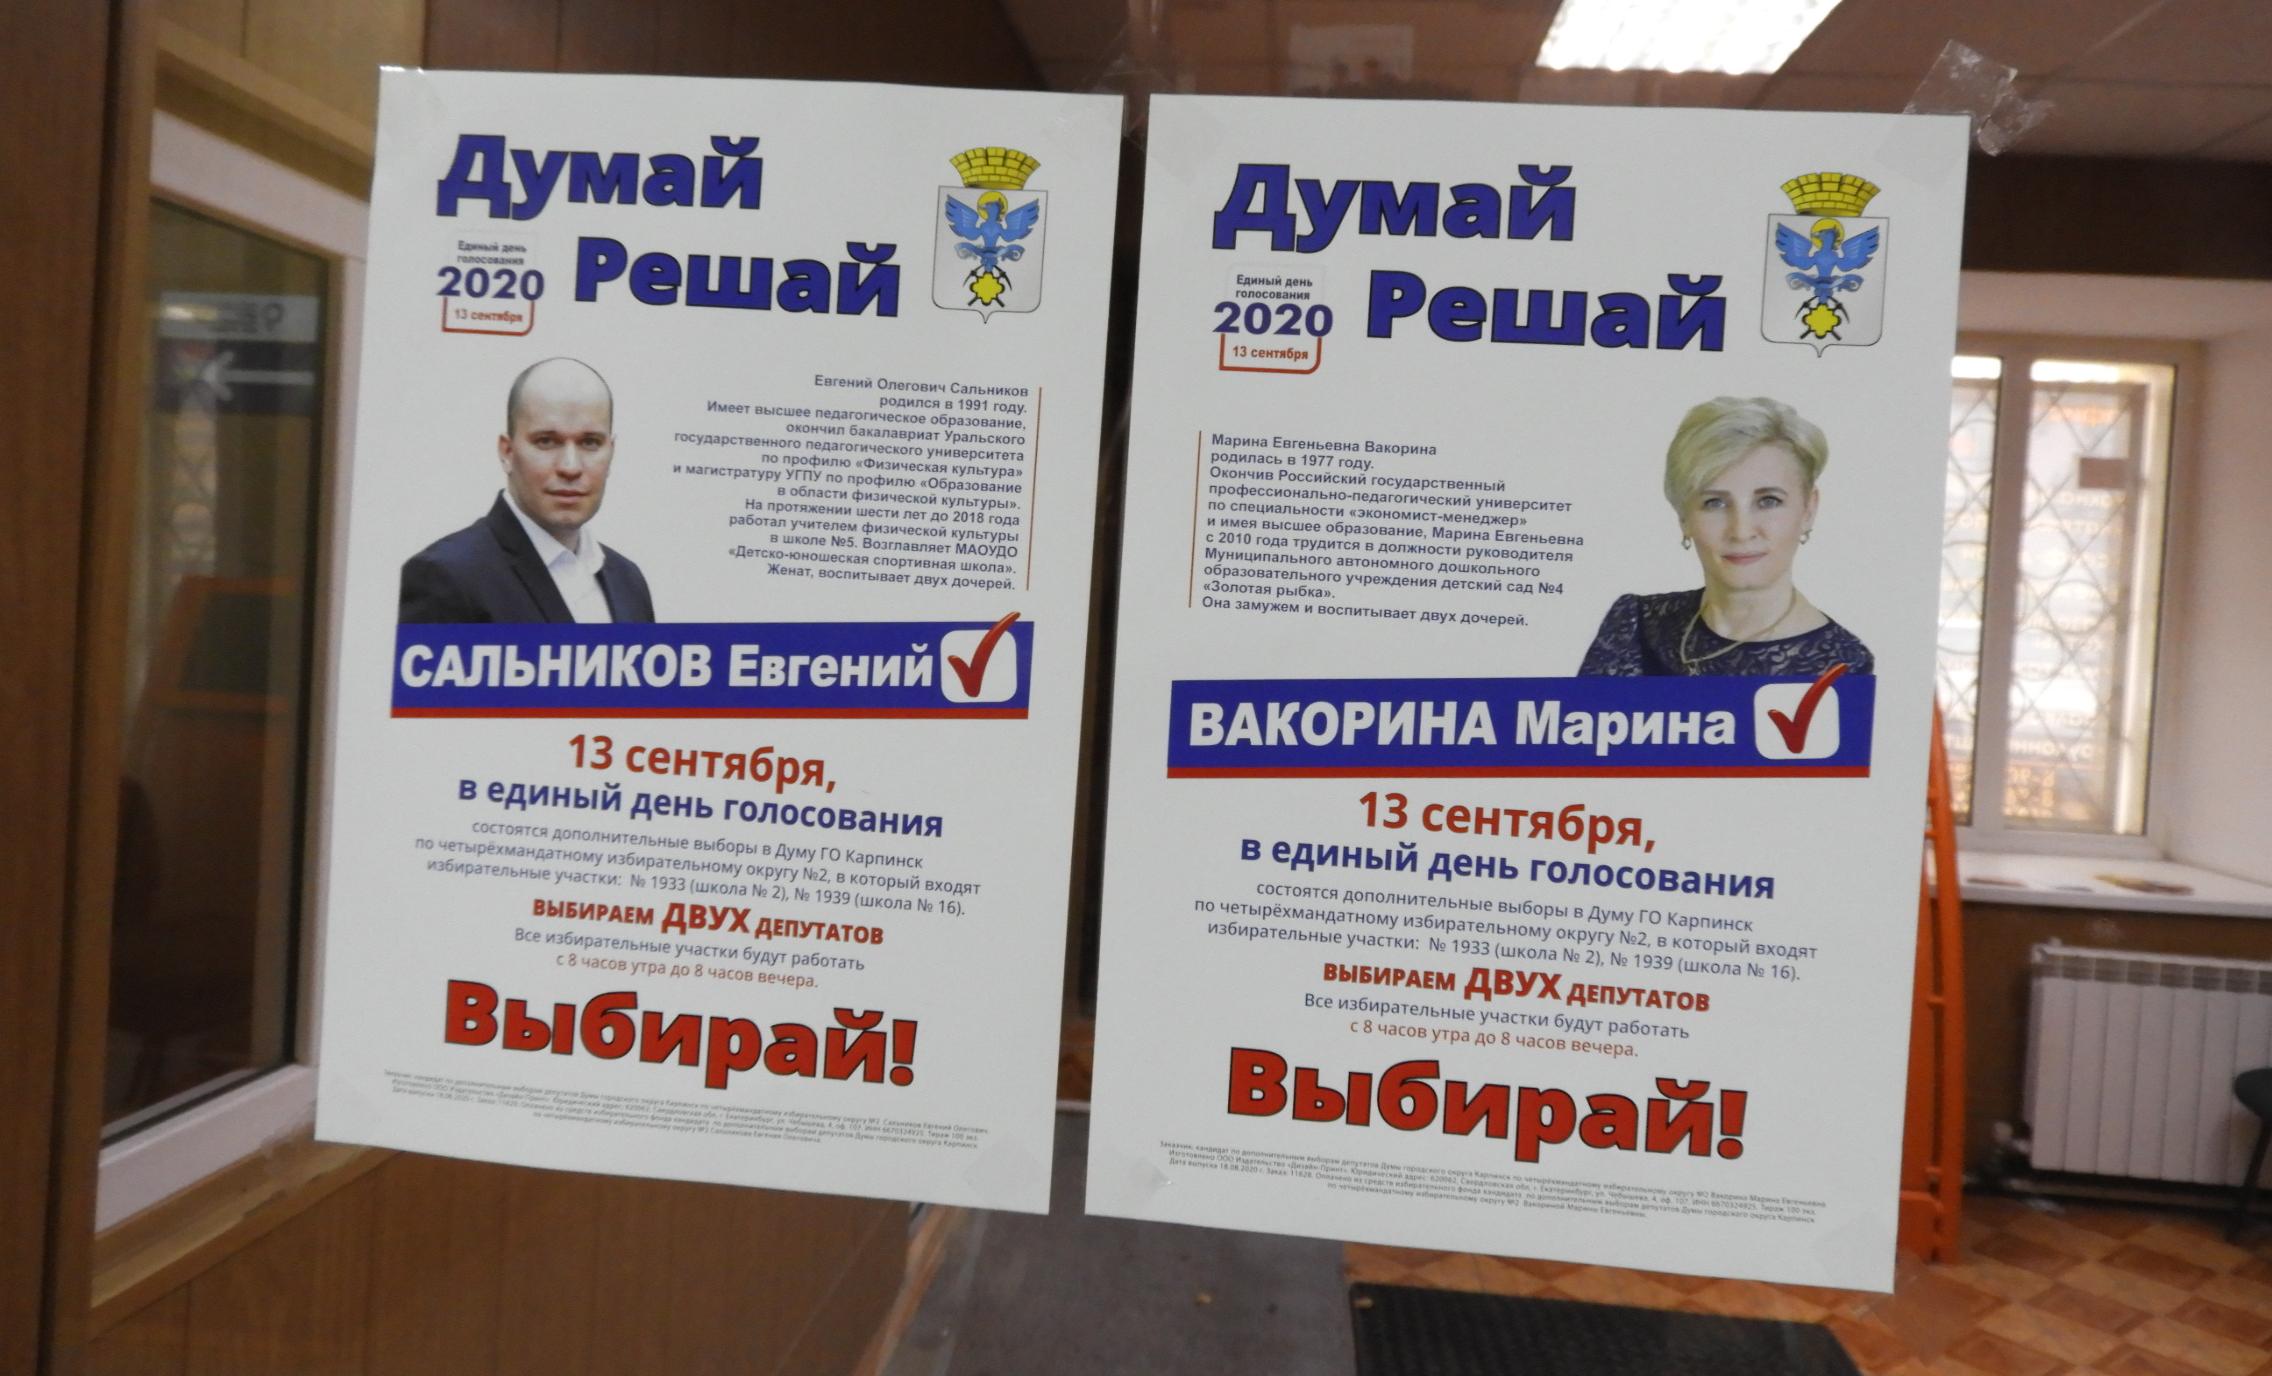 Будущие депутаты городской Думы: кто они и что обещали перед выборами 